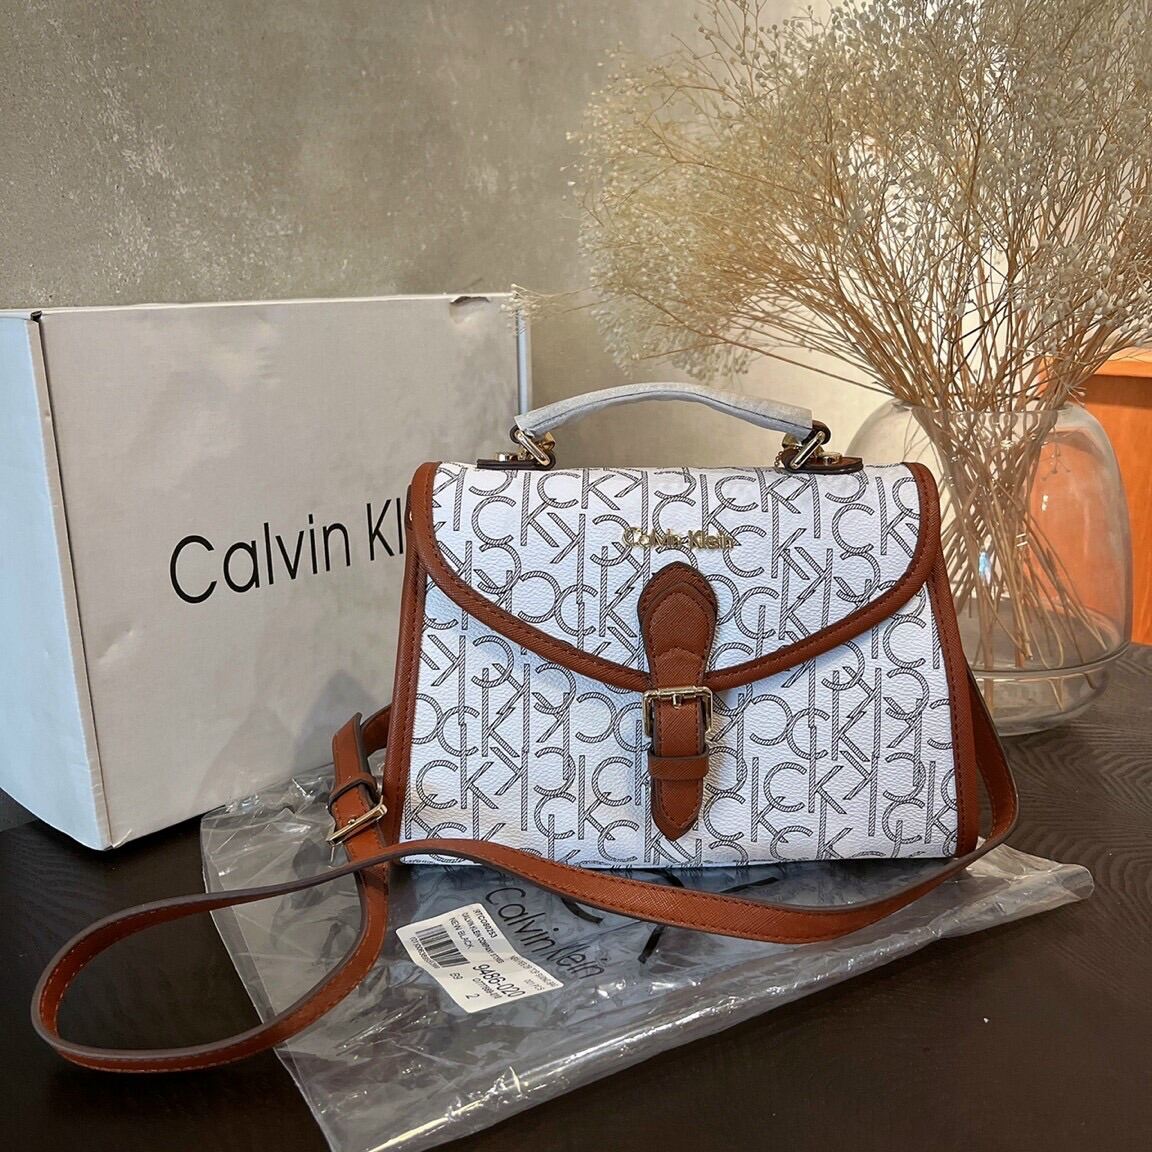 Calvin Klein Women Bags